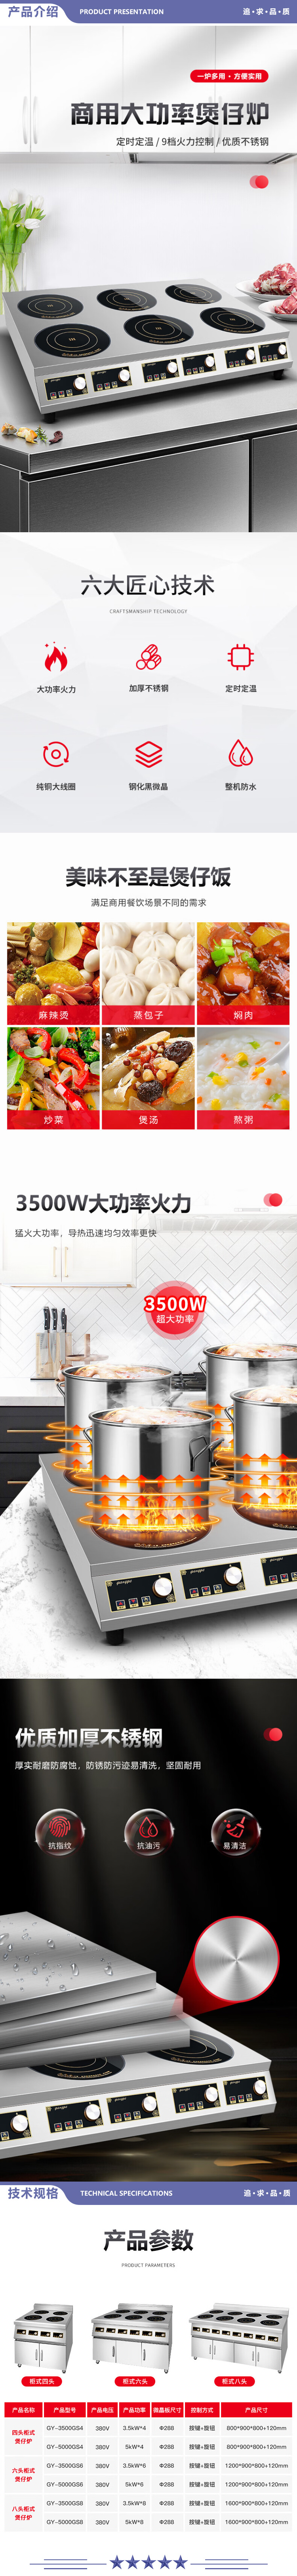 英利蒂克 Enlitic GY-5000GS8 商用电磁炉 不锈钢八头柜式煲仔炉5000W大功率 2.jpg